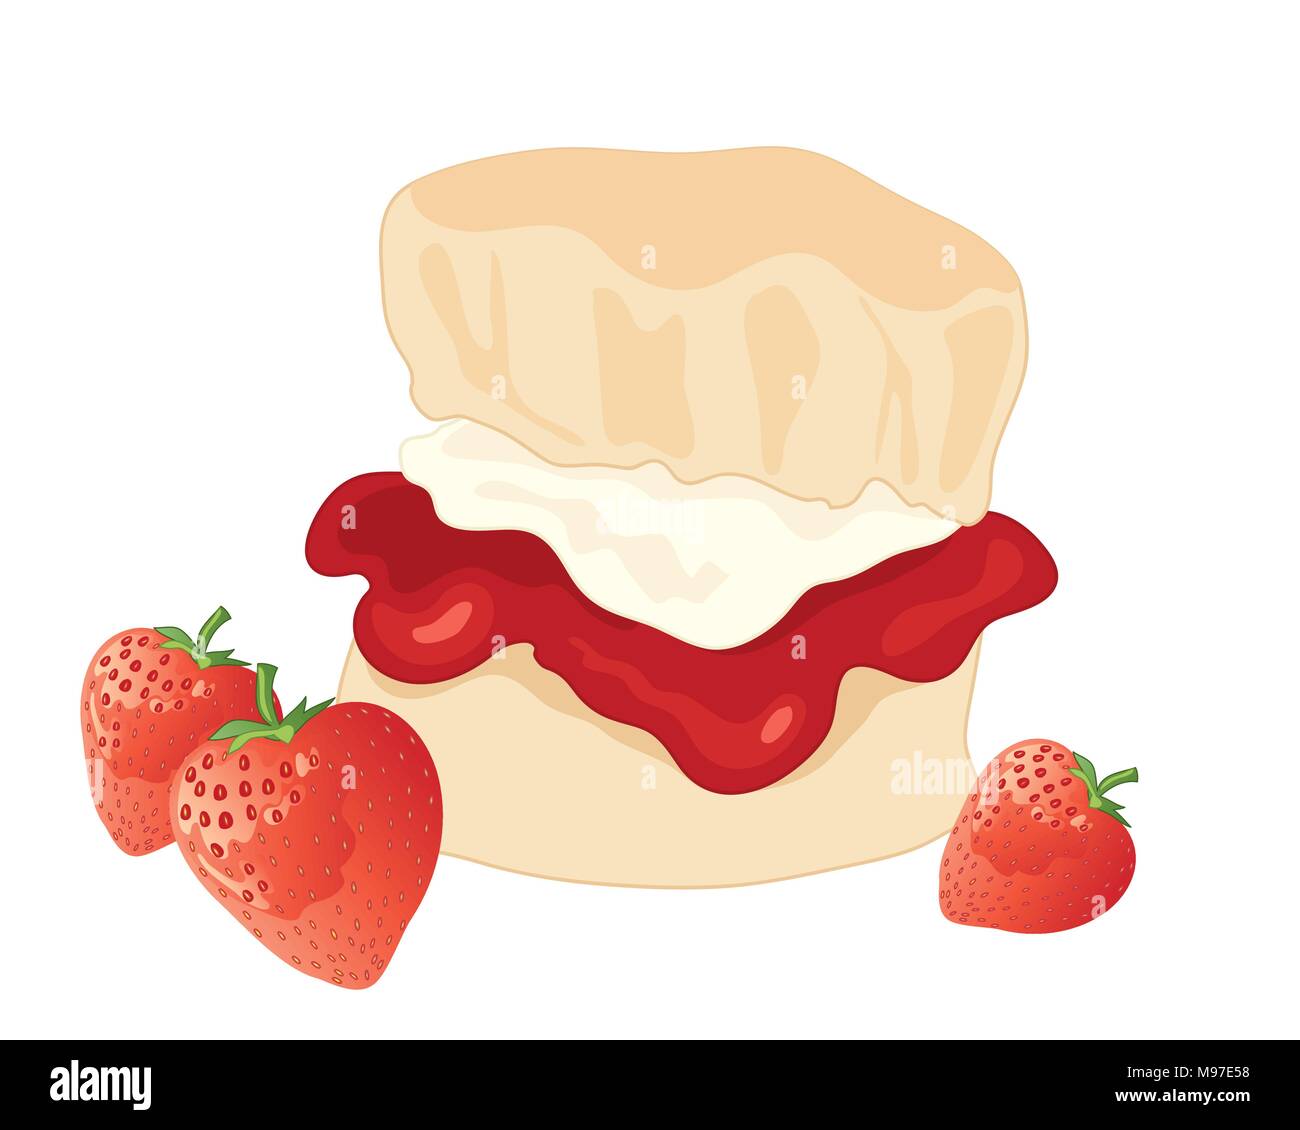 Une illustration d'une confiture délicieuse et crème avec scone de fraises fraîches sur fond blanc Illustration de Vecteur